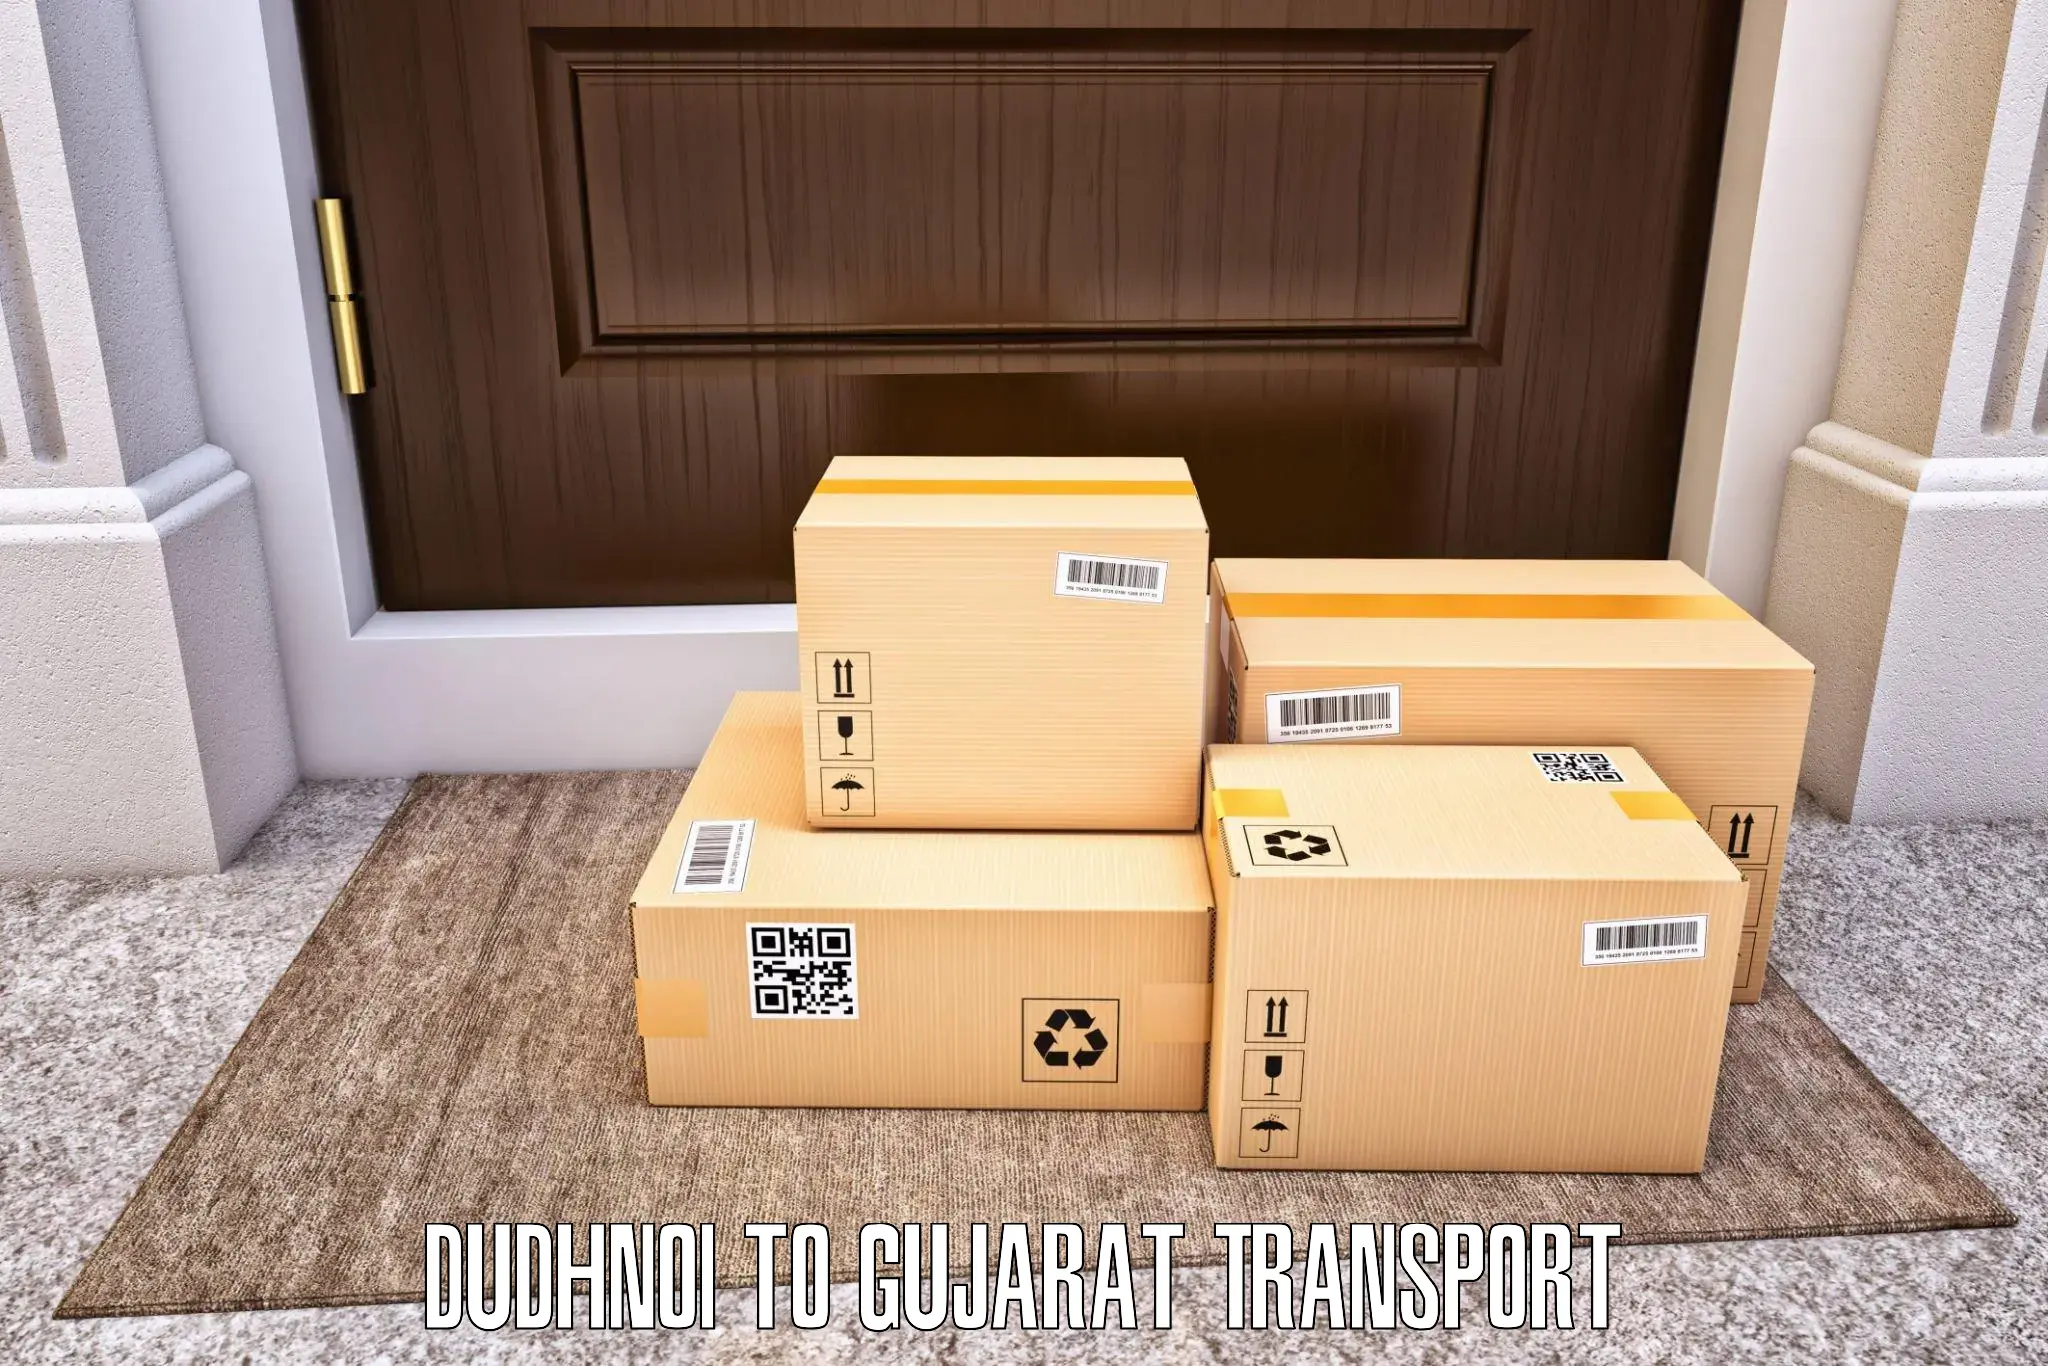 Two wheeler parcel service Dudhnoi to Palitana